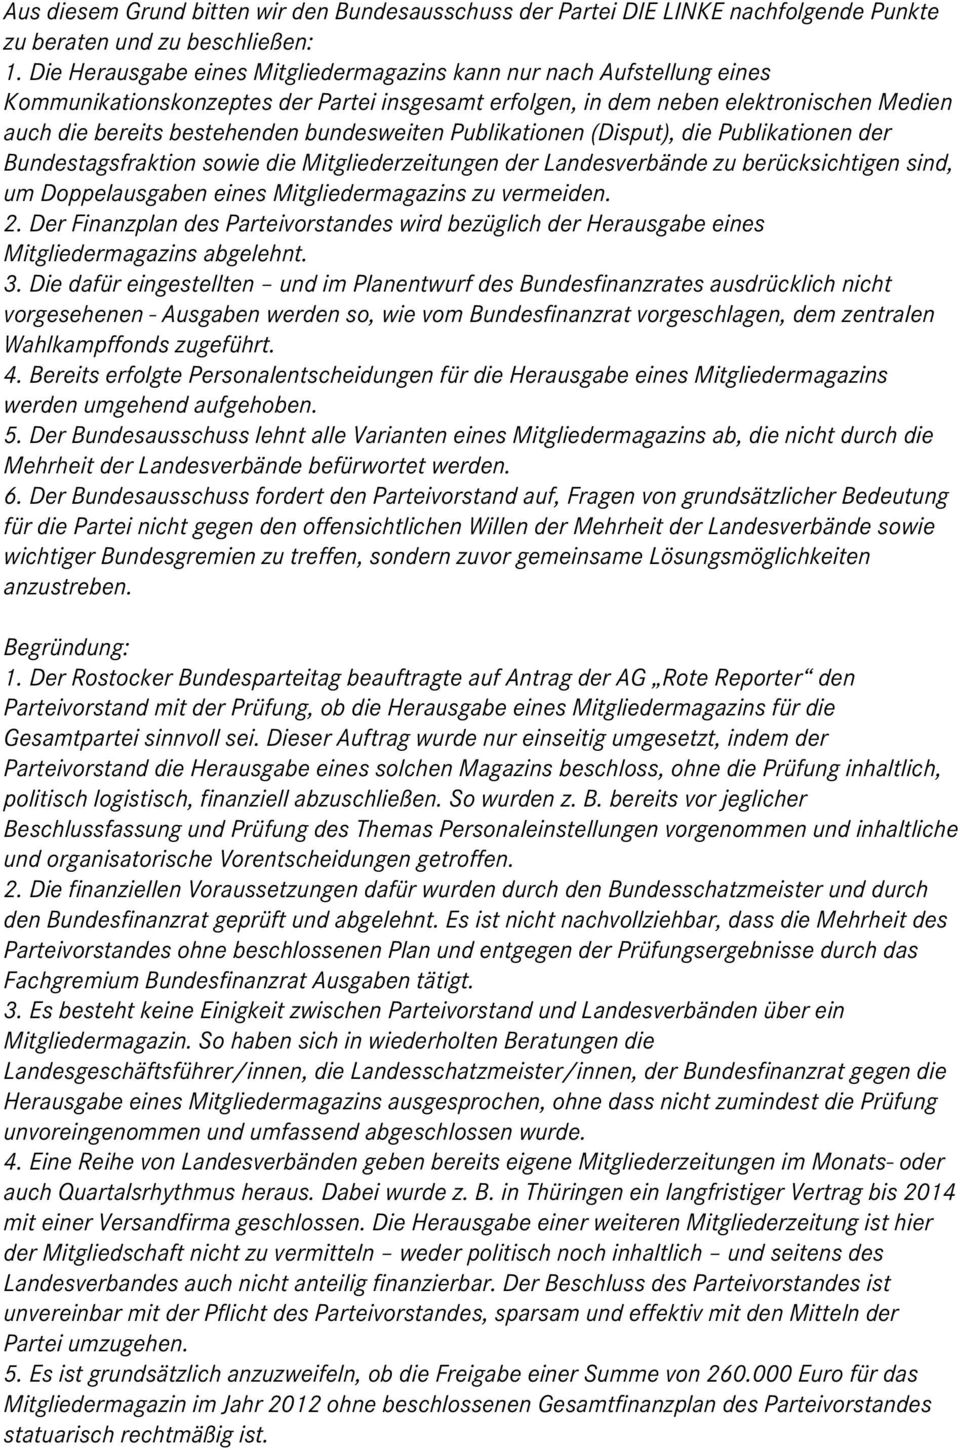 bundesweiten Publikationen (Disput), die Publikationen der Bundestagsfraktion sowie die Mitgliederzeitungen der Landesverbände zu berücksichtigen sind, um Doppelausgaben eines Mitgliedermagazins zu